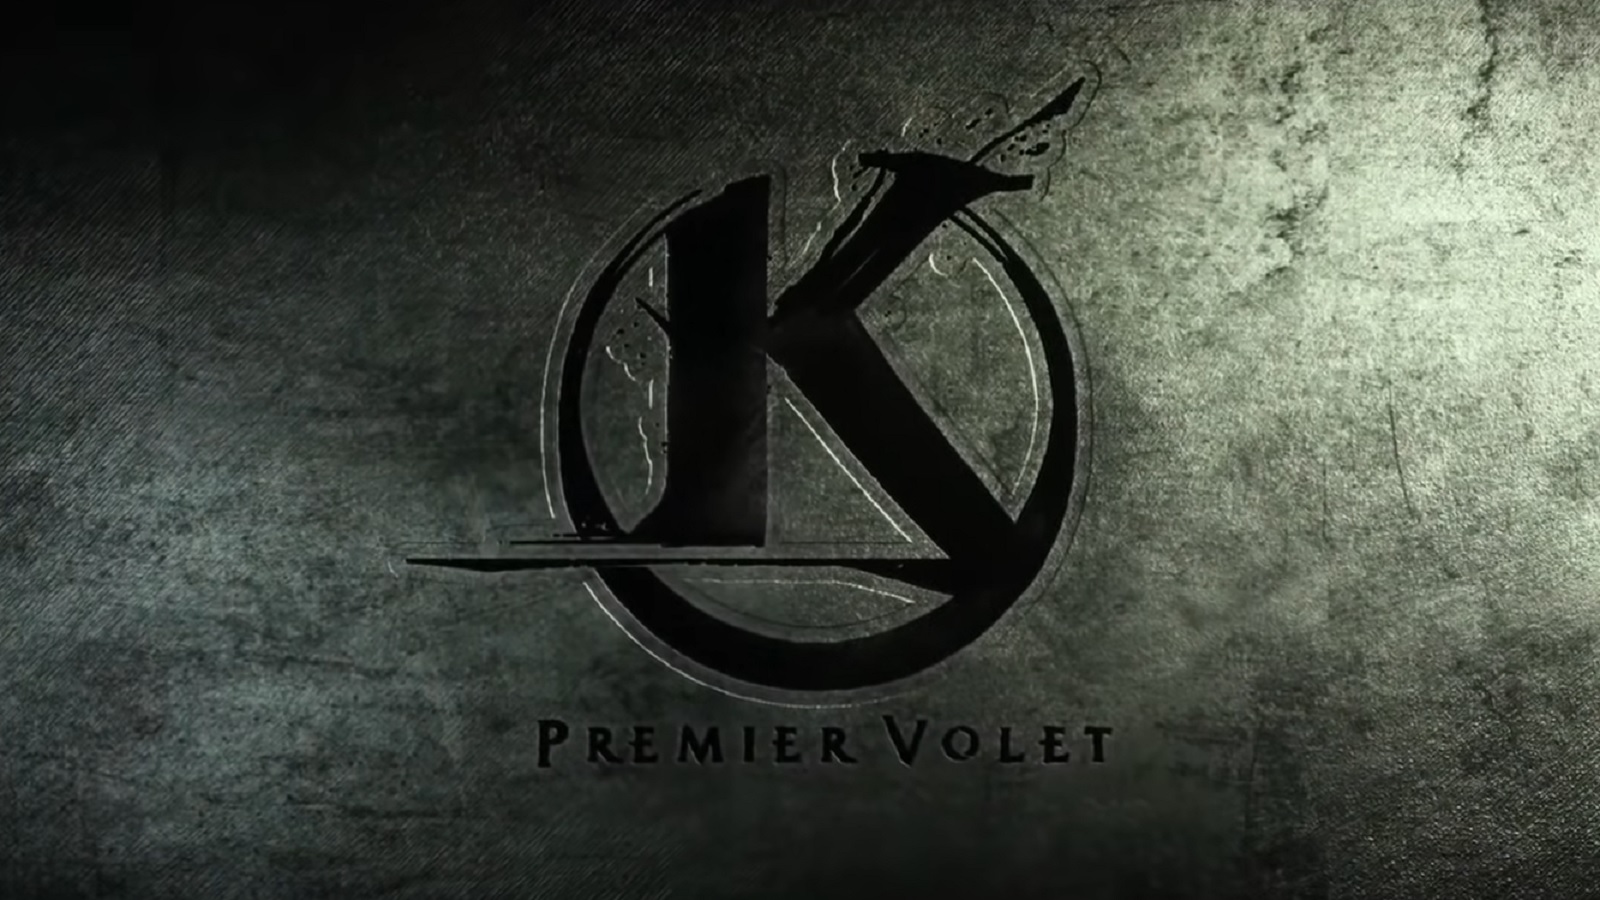 Kaamelott - Premier Volet trouve sa nouvelle date de sortie : le 21 juillet